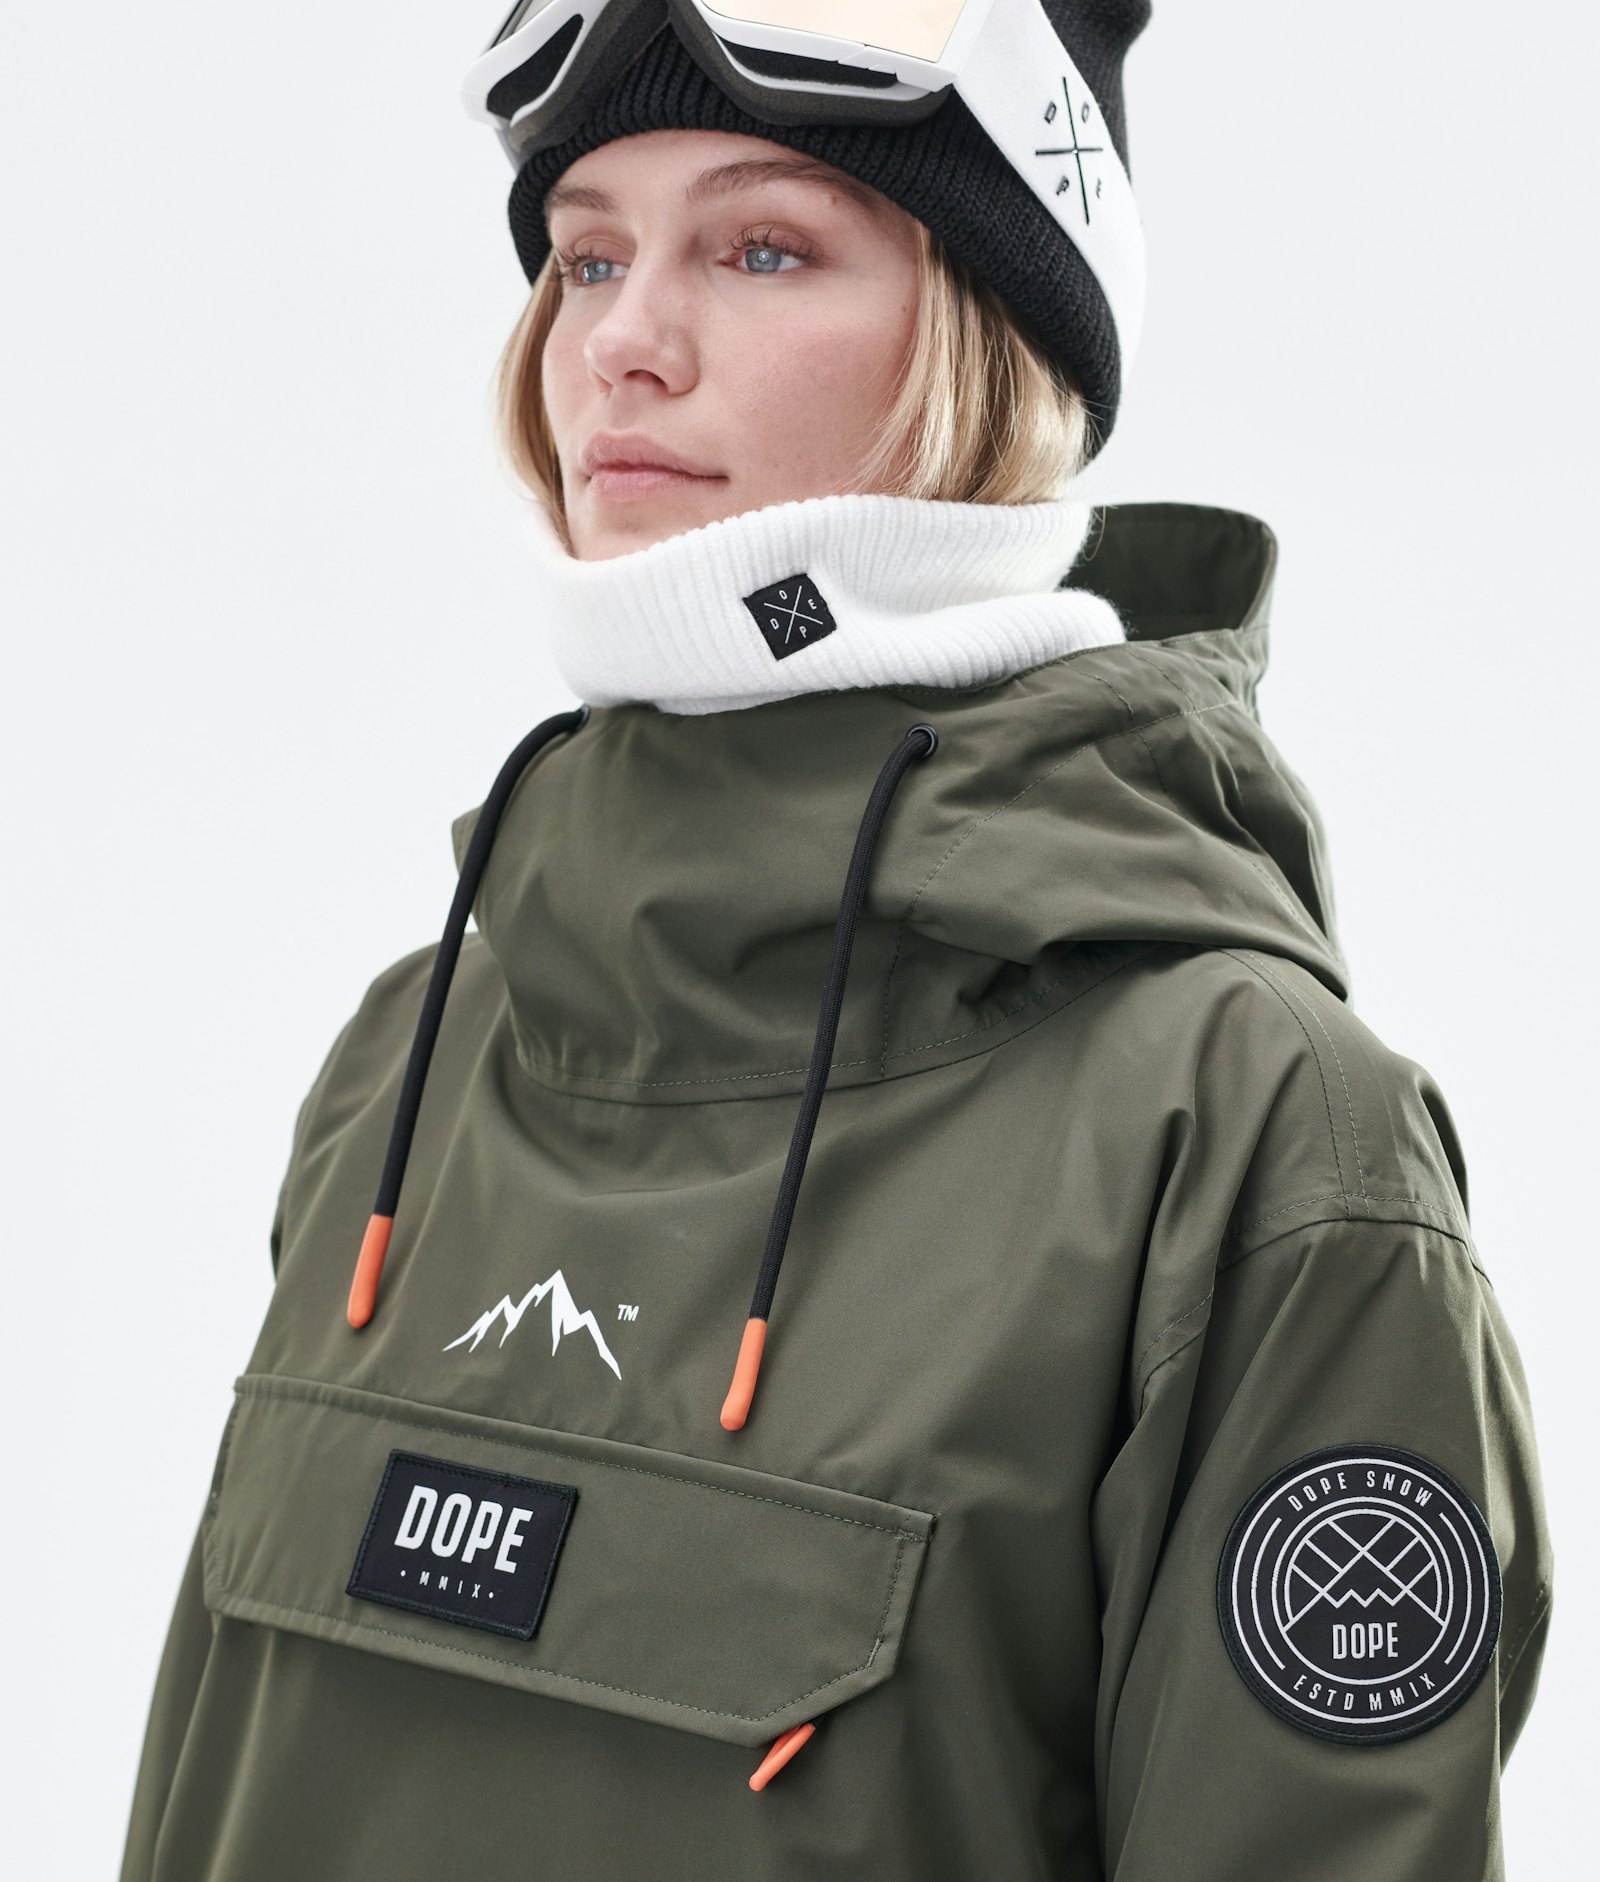 Blizzard W 2020 Snowboard Jacket Women Olive Green